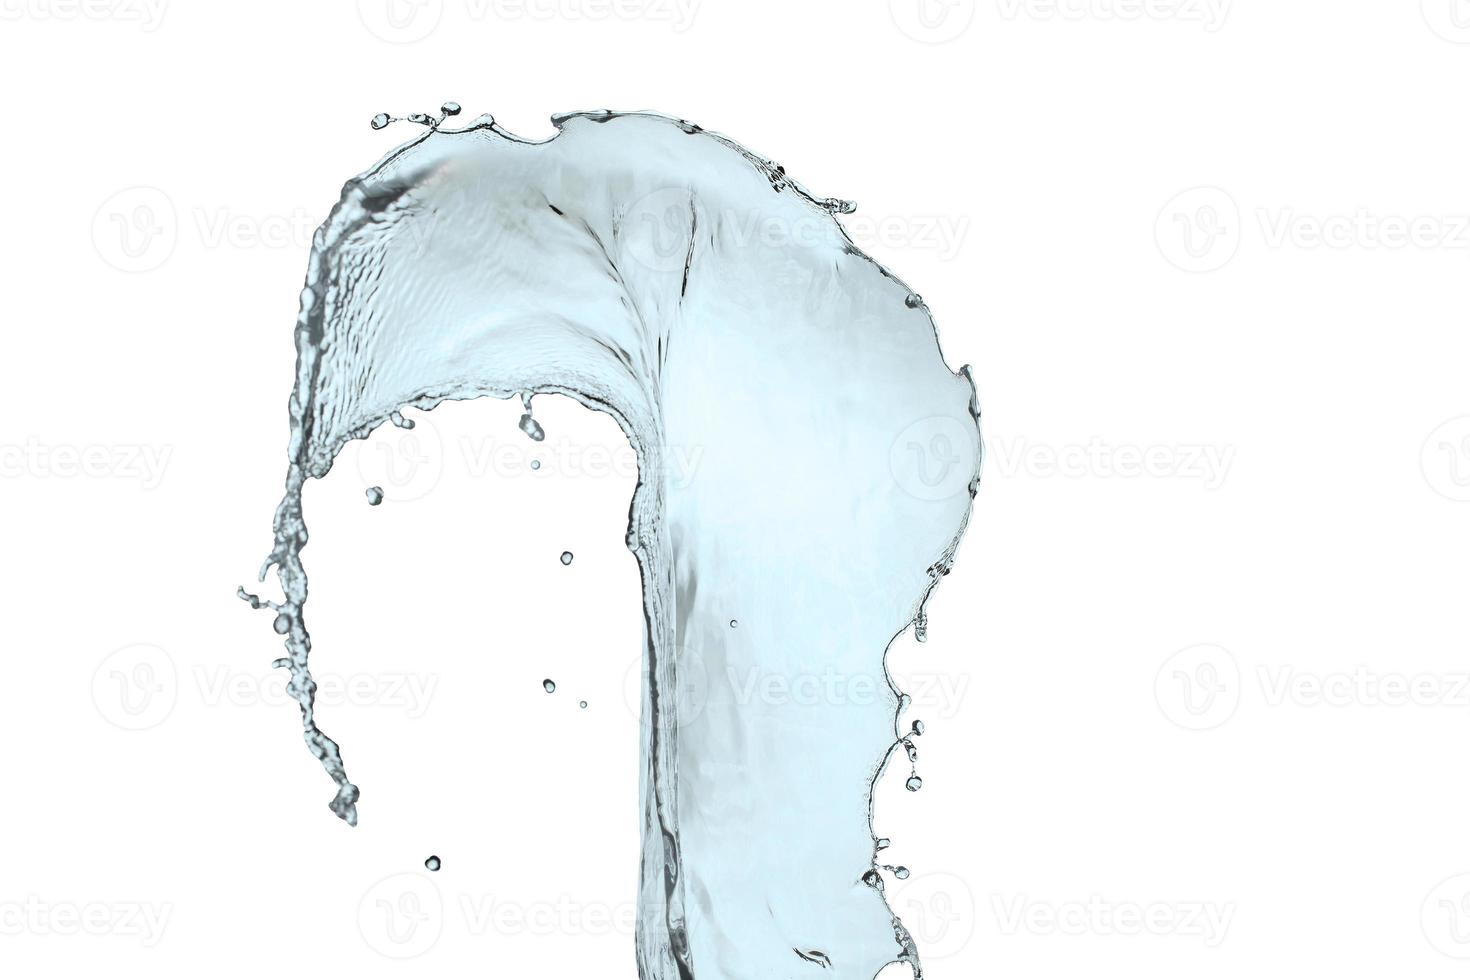 Wasserspritzer lokalisiert auf einem Weiß mit Hintergrund foto